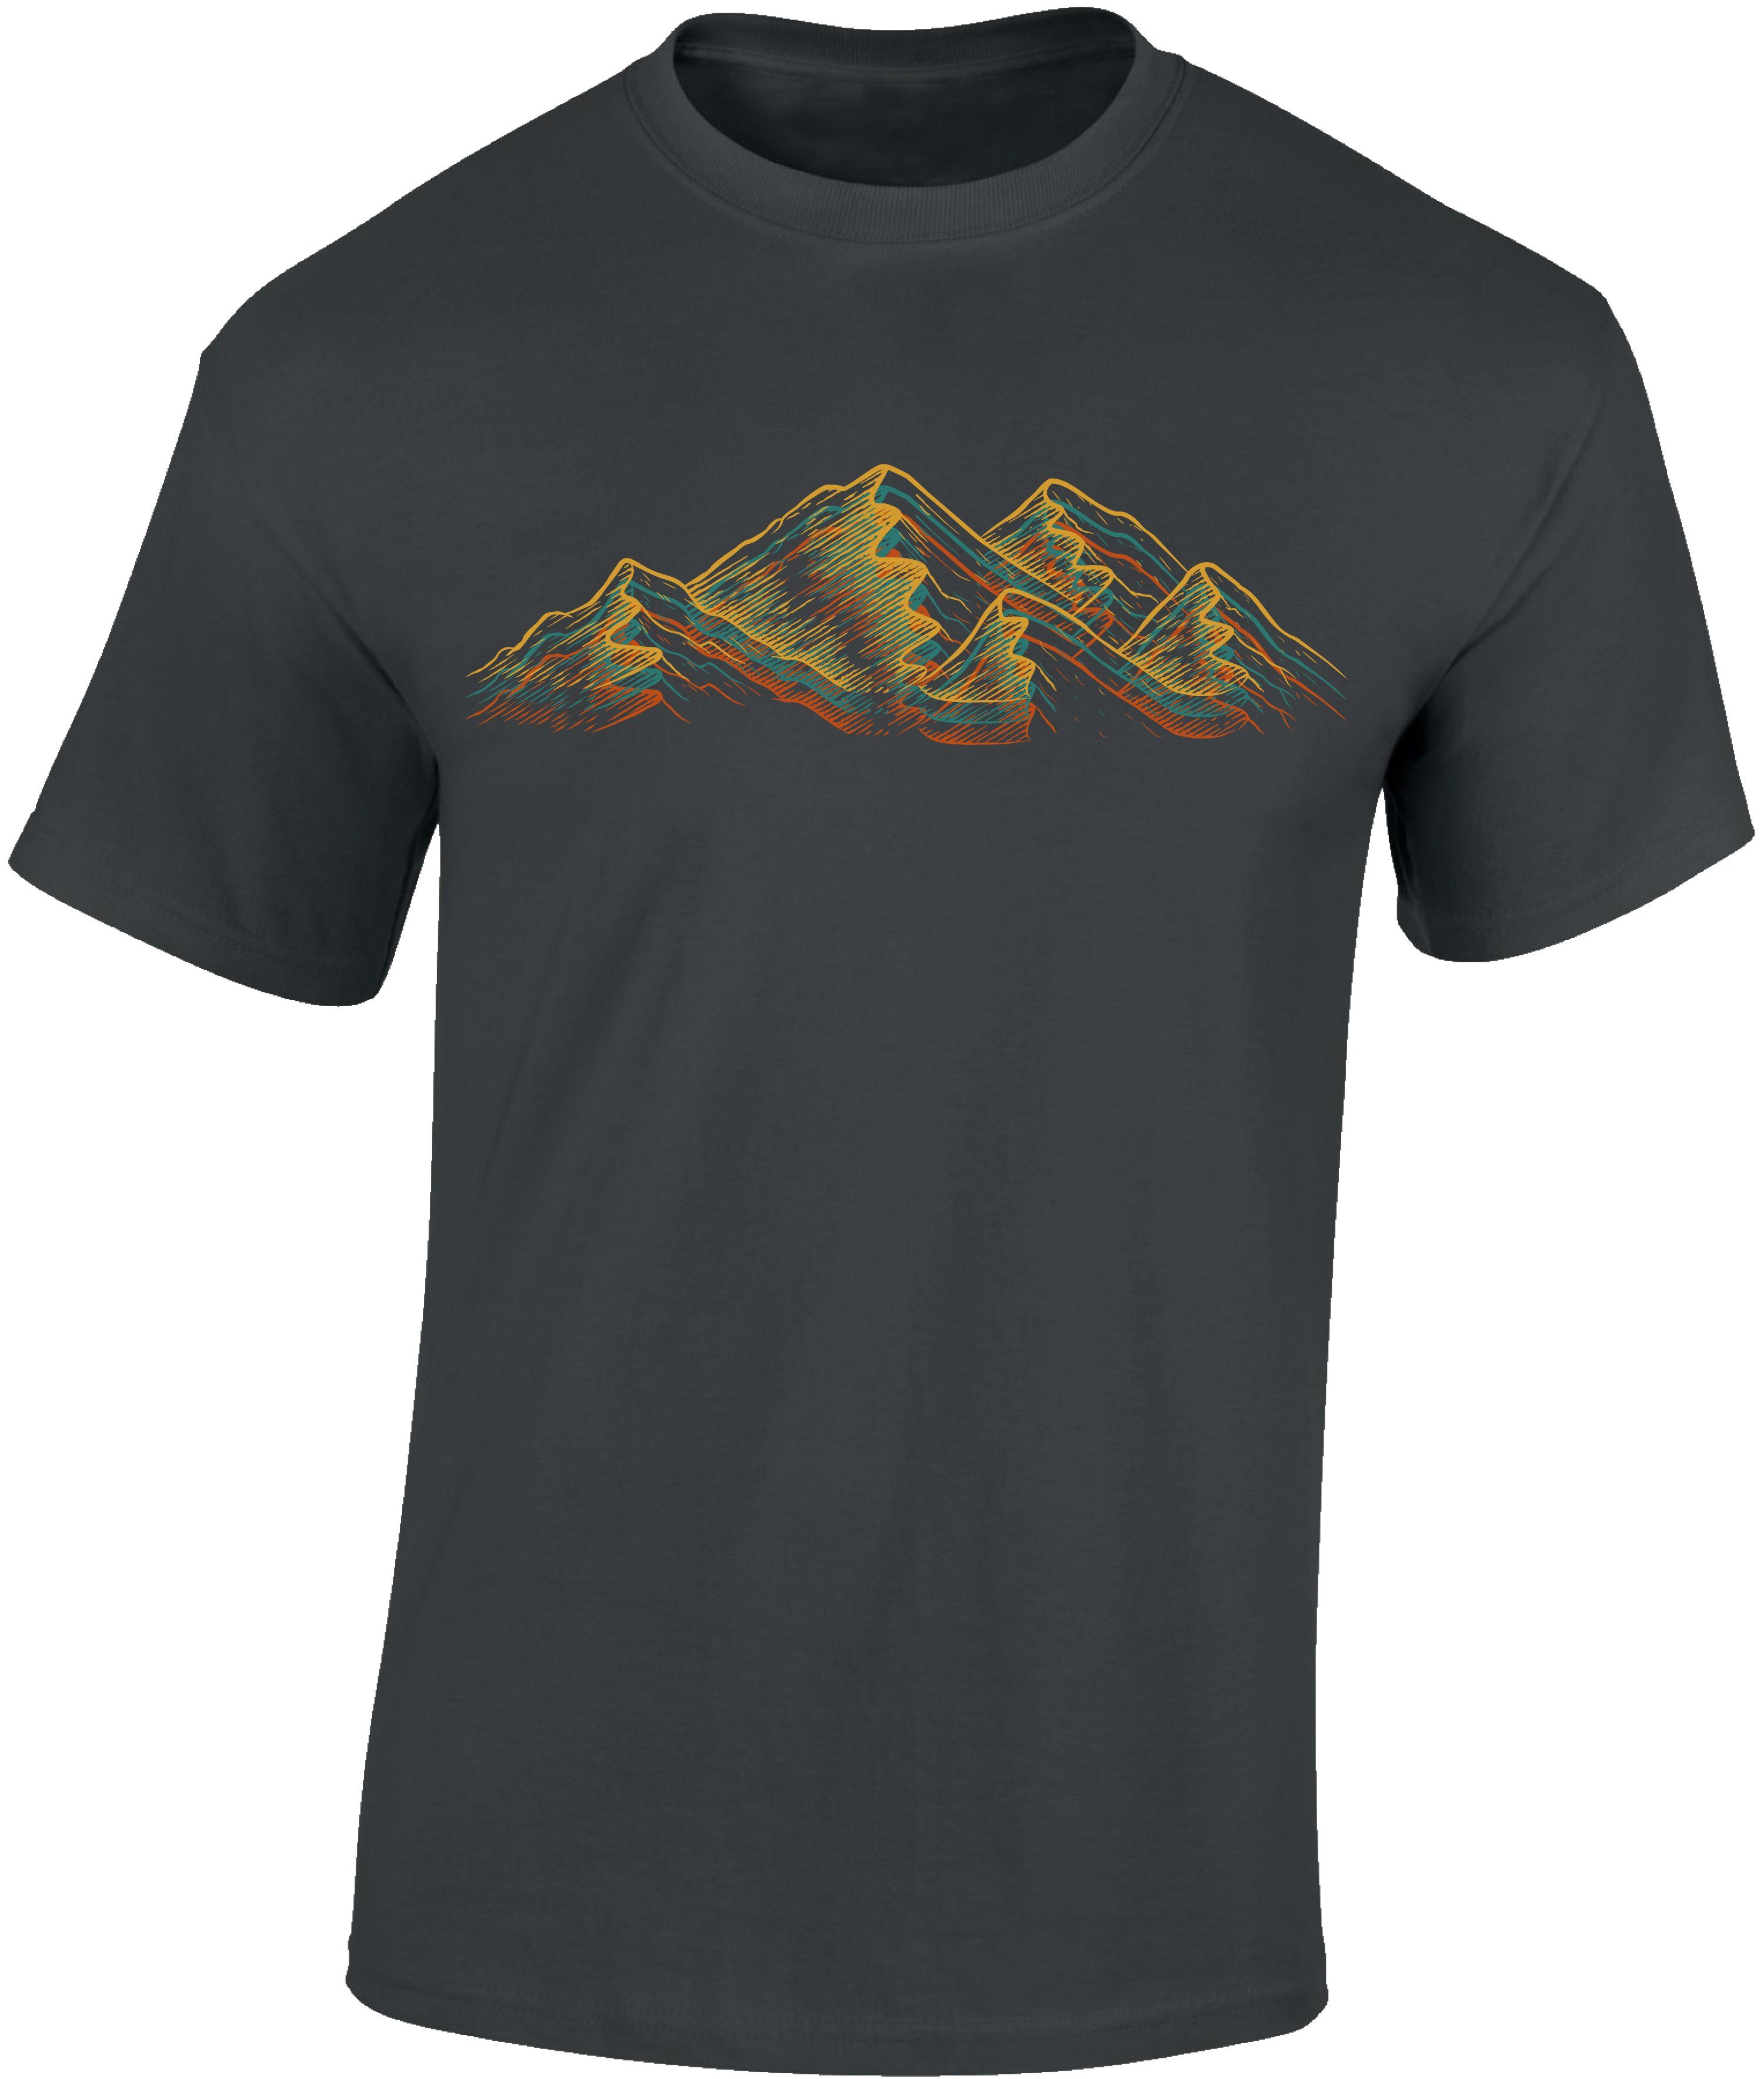 Baddery Print-Shirt Wander Shirt : Alpen - Kletter T-Shirt für Wanderfreunde - Bergsteiger hochwertiger Siebdruck, auch Übergrößen, aus Baumwolle Dark Grey